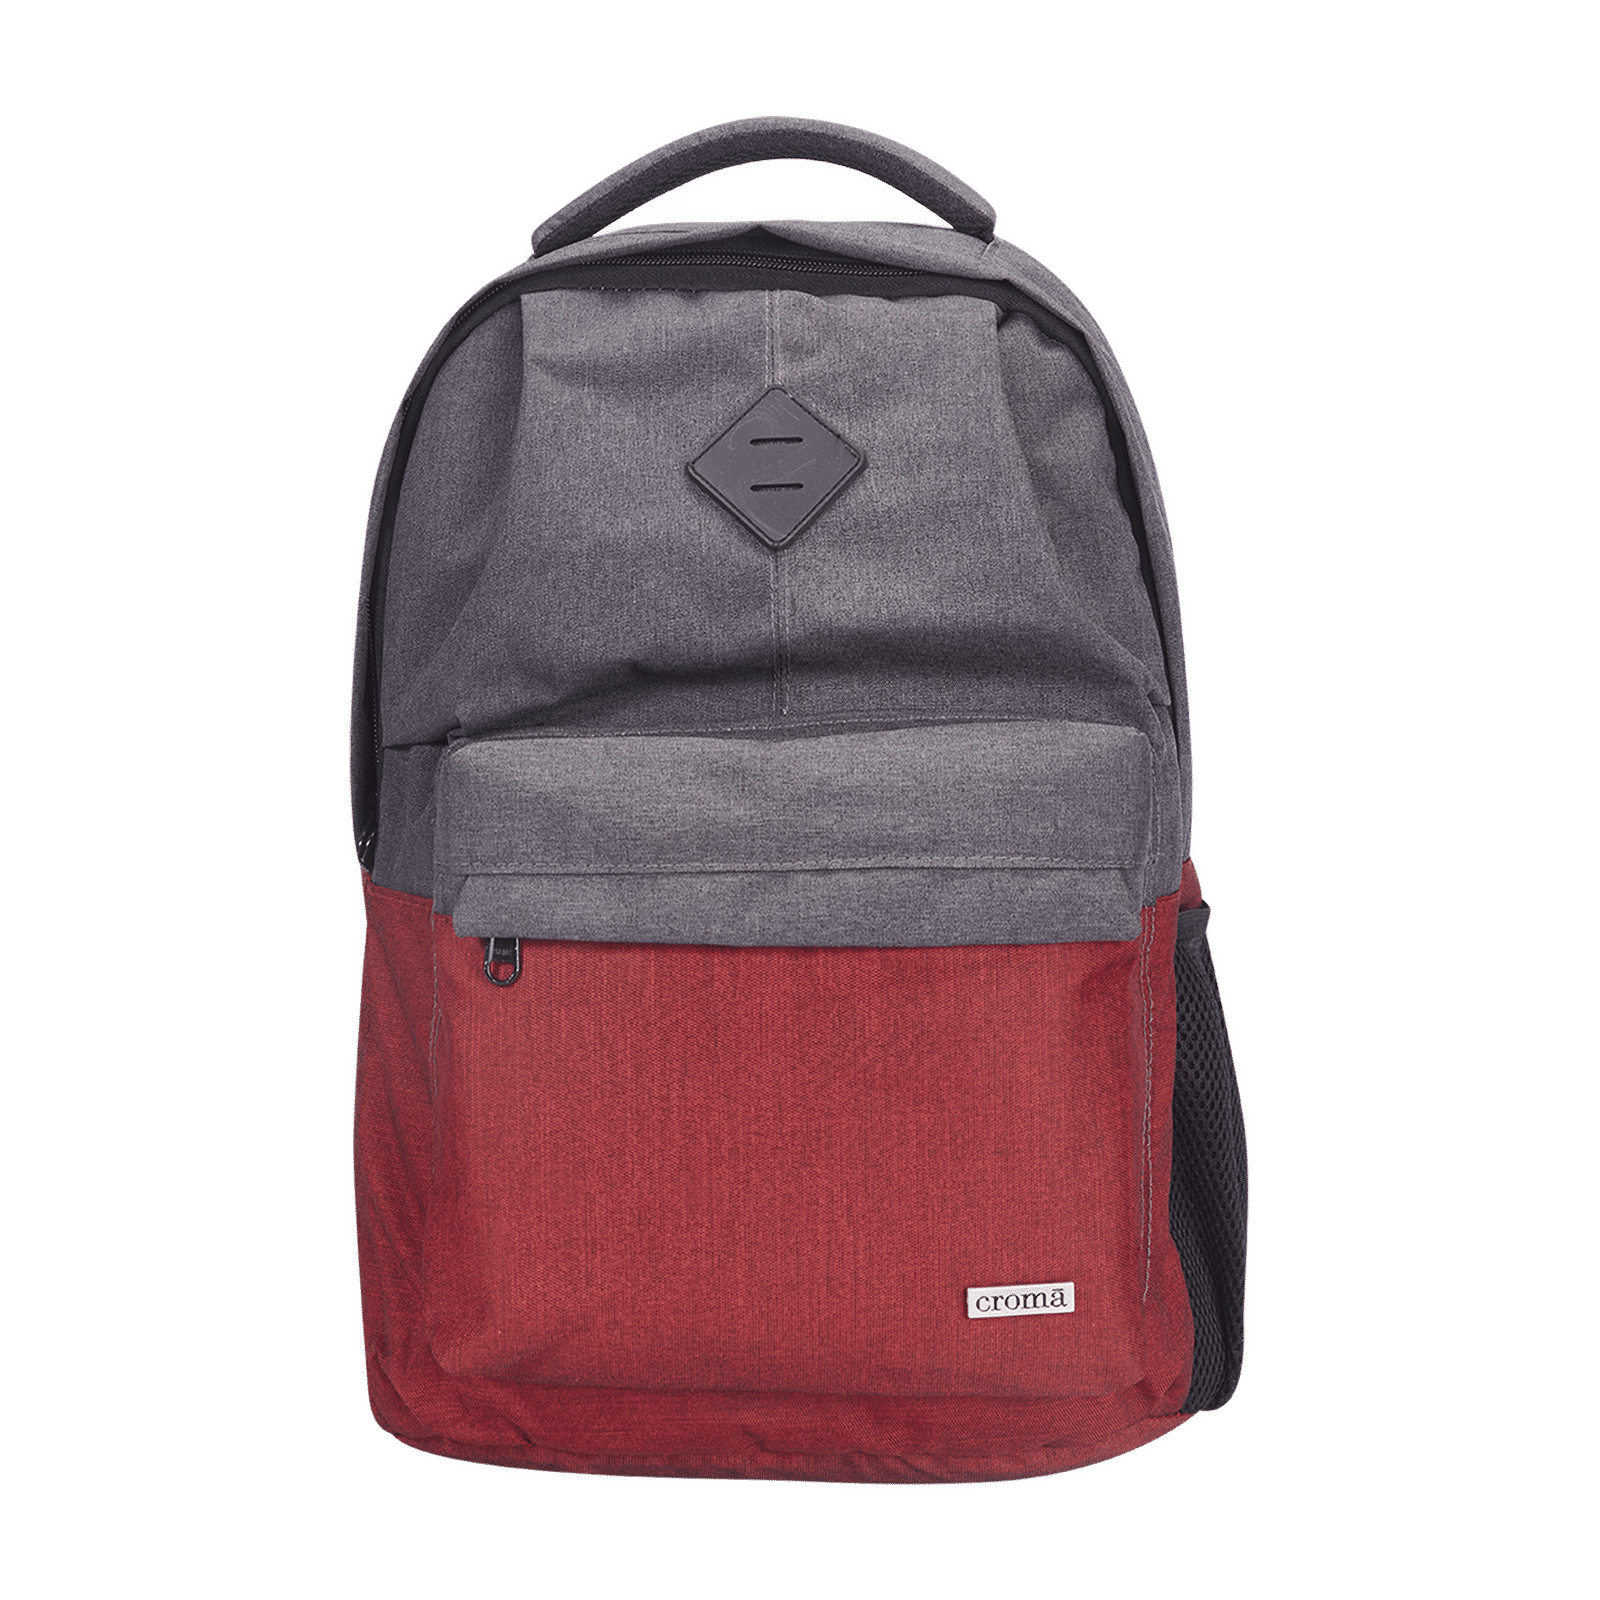 DSLR Camera Laptop Backpack Bag with Adjustable GridsMade  Smiledrivein